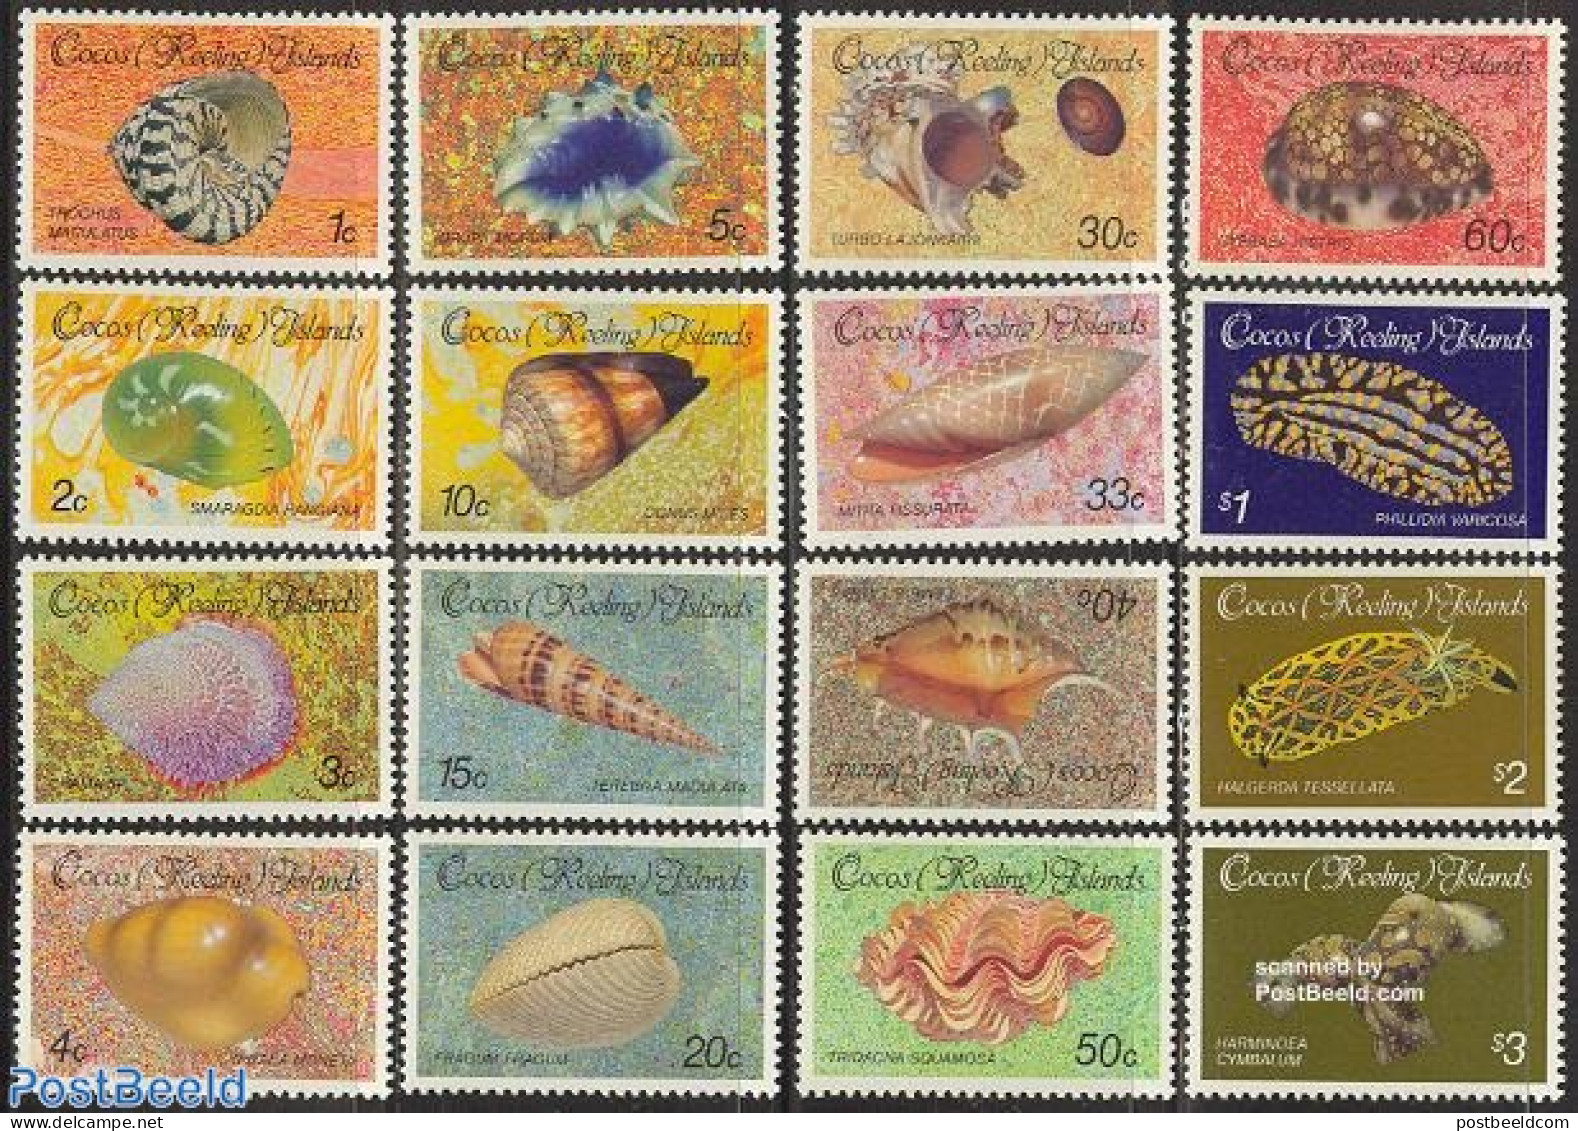 Cocos Islands 1985 Definitives, Shells 16v, Mint NH, Nature - Shells & Crustaceans - Meereswelt